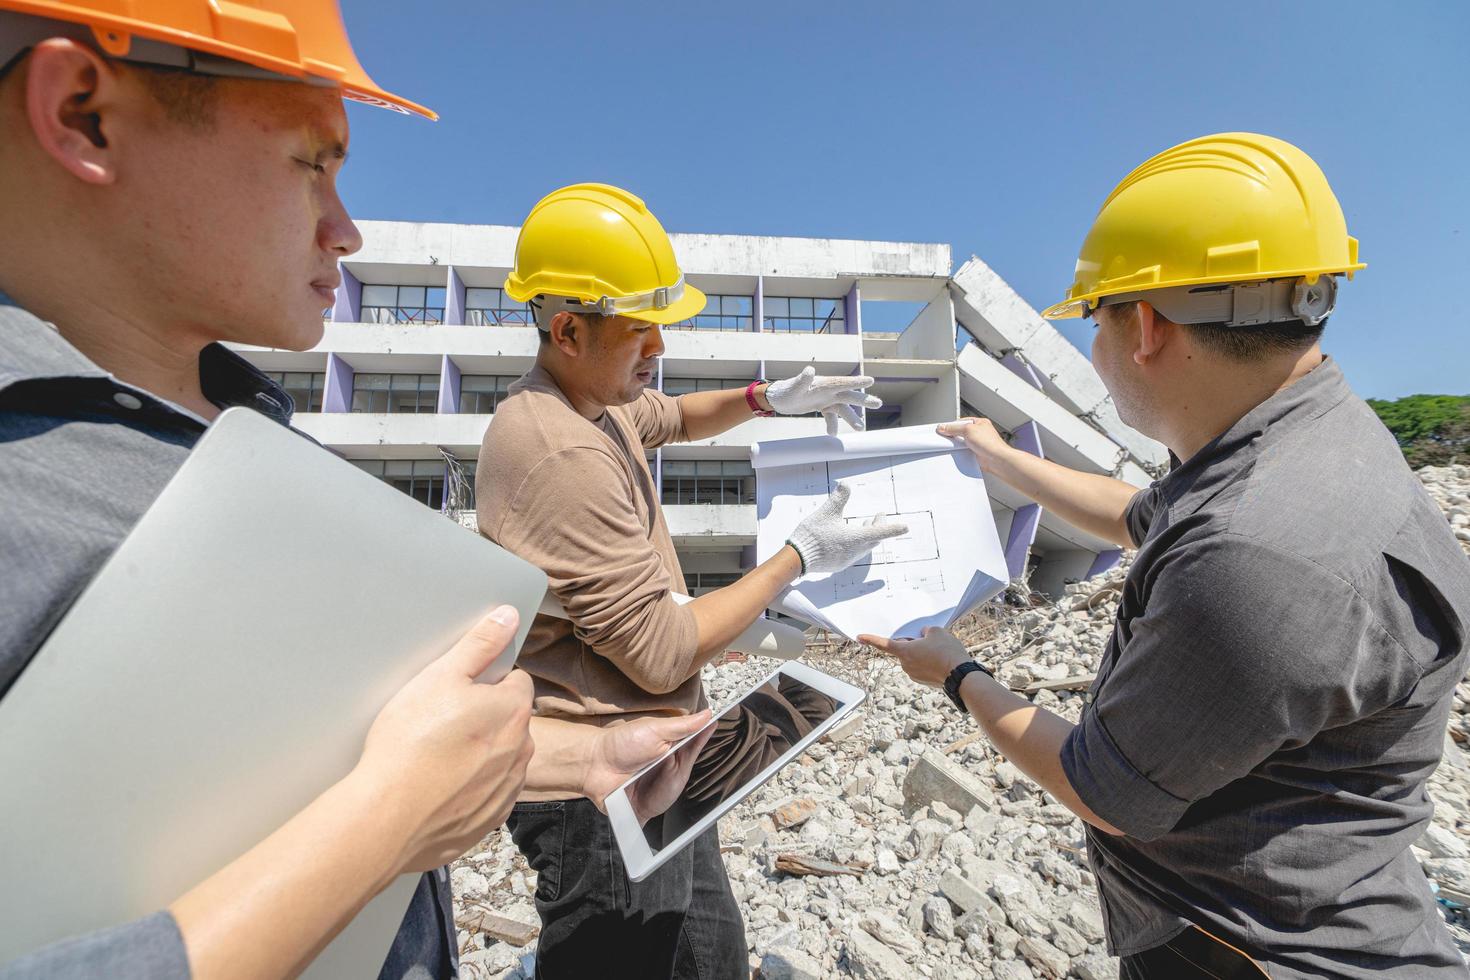 equipe de engenheiros e trabalhadores verificando o plano de construção de demolição e inspecionando no local. foto